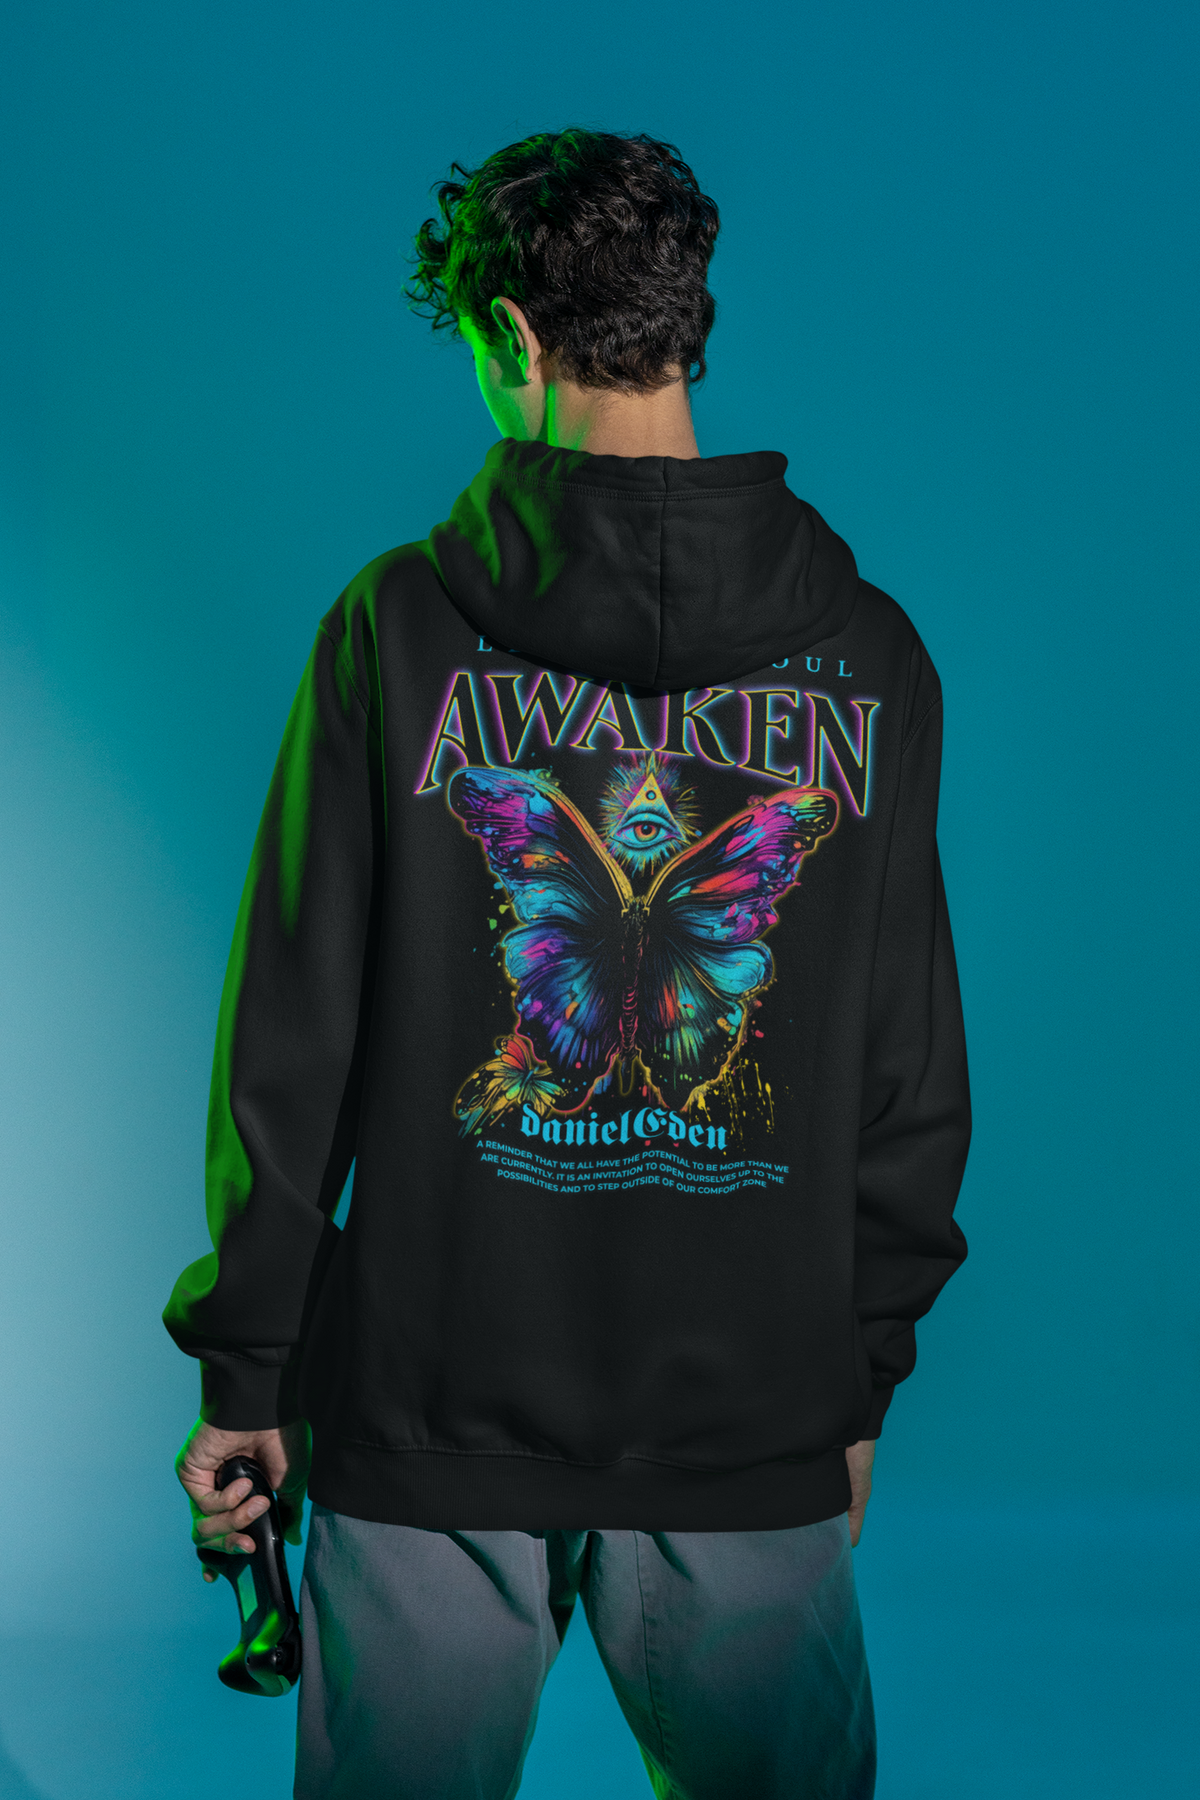 DanielEden heavy blend zip hoodie “ Awaken “